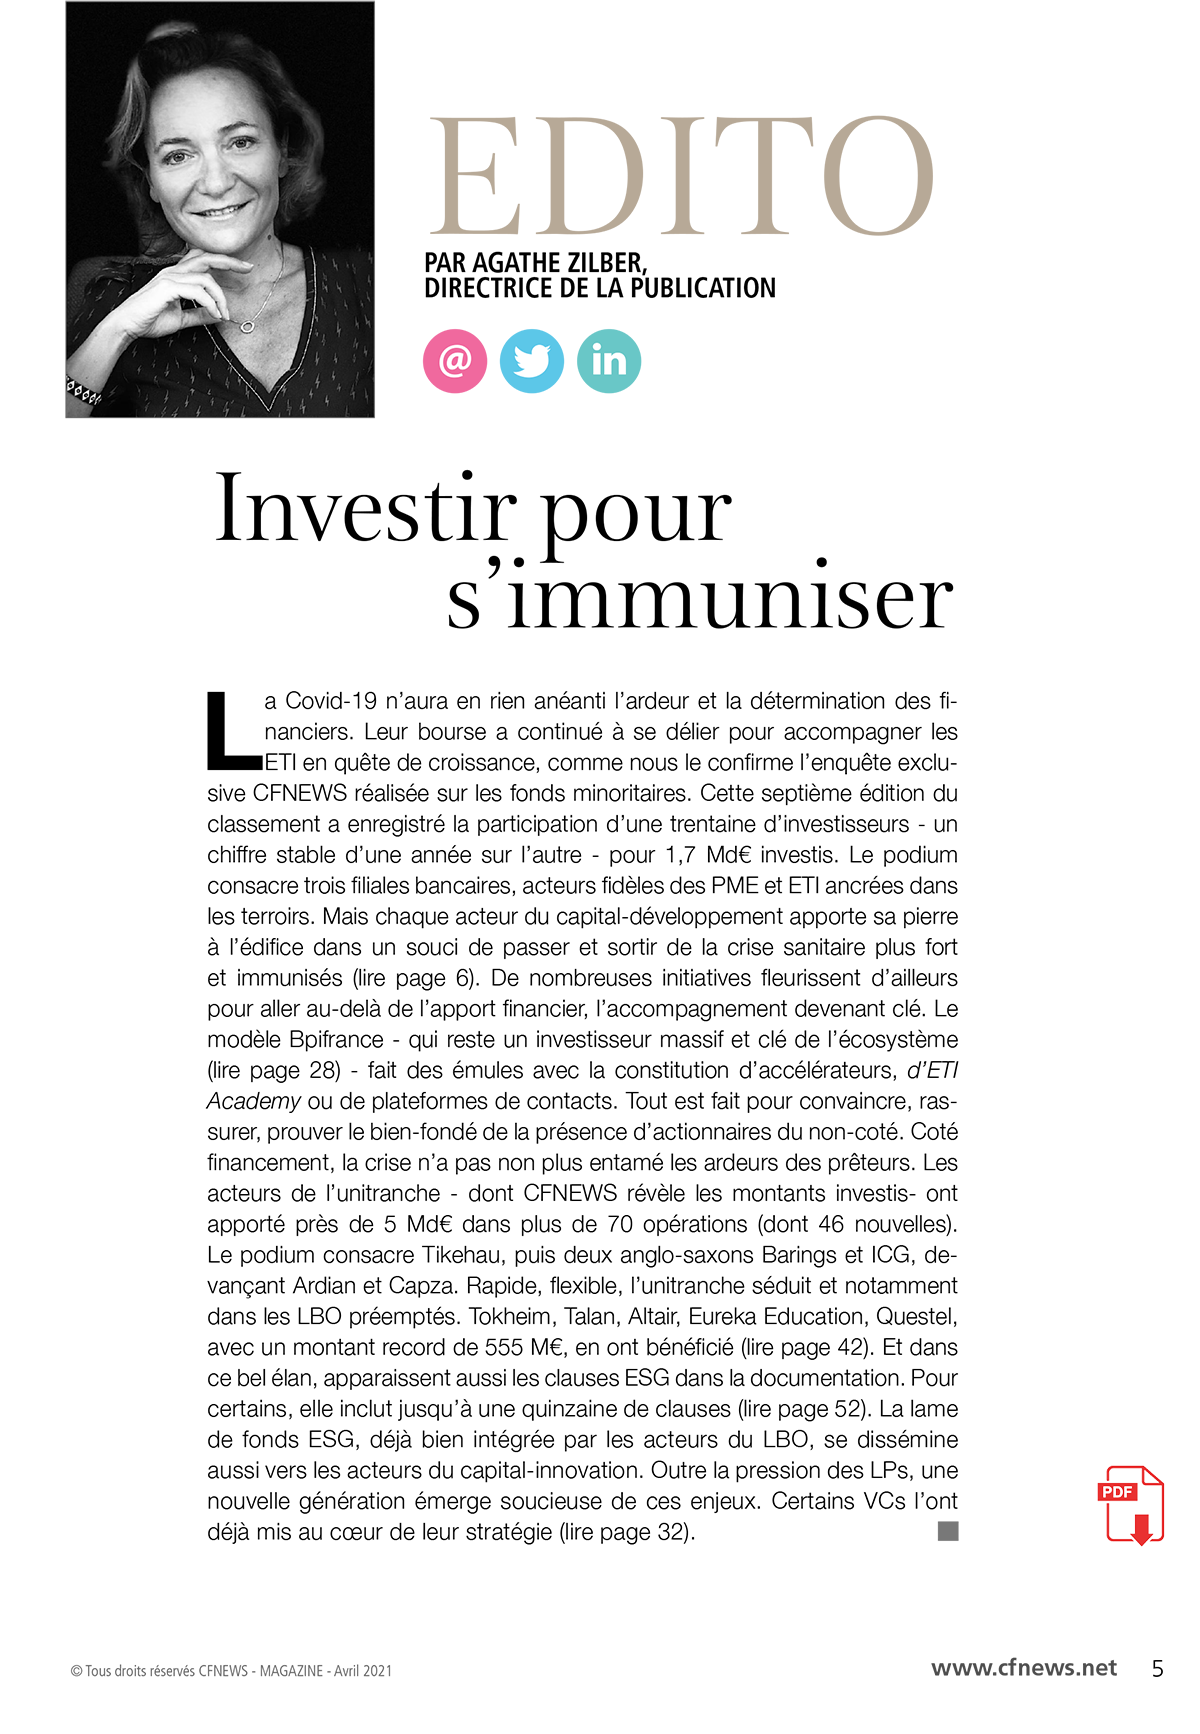 Edito - Investir pour s'immuniser